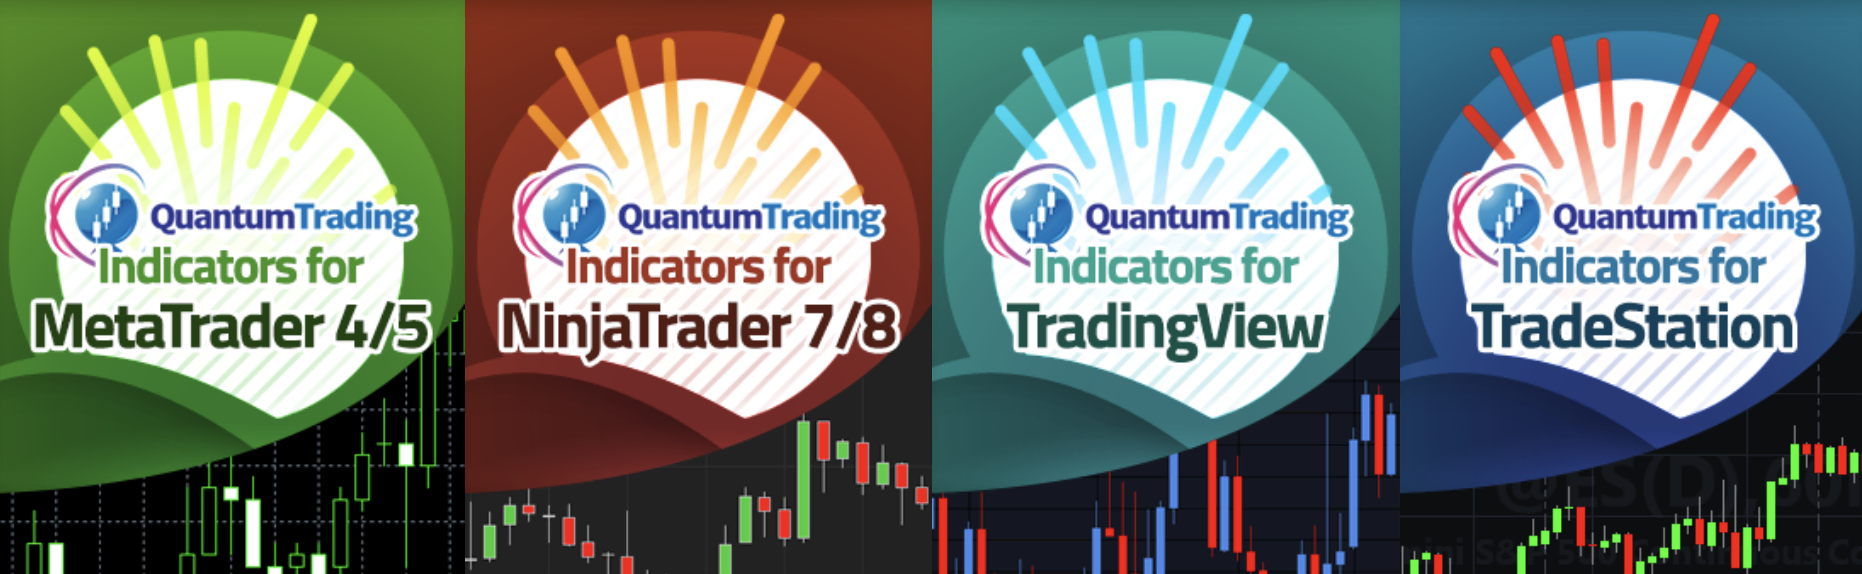 المؤشرات المتاحة على Quantum Trading